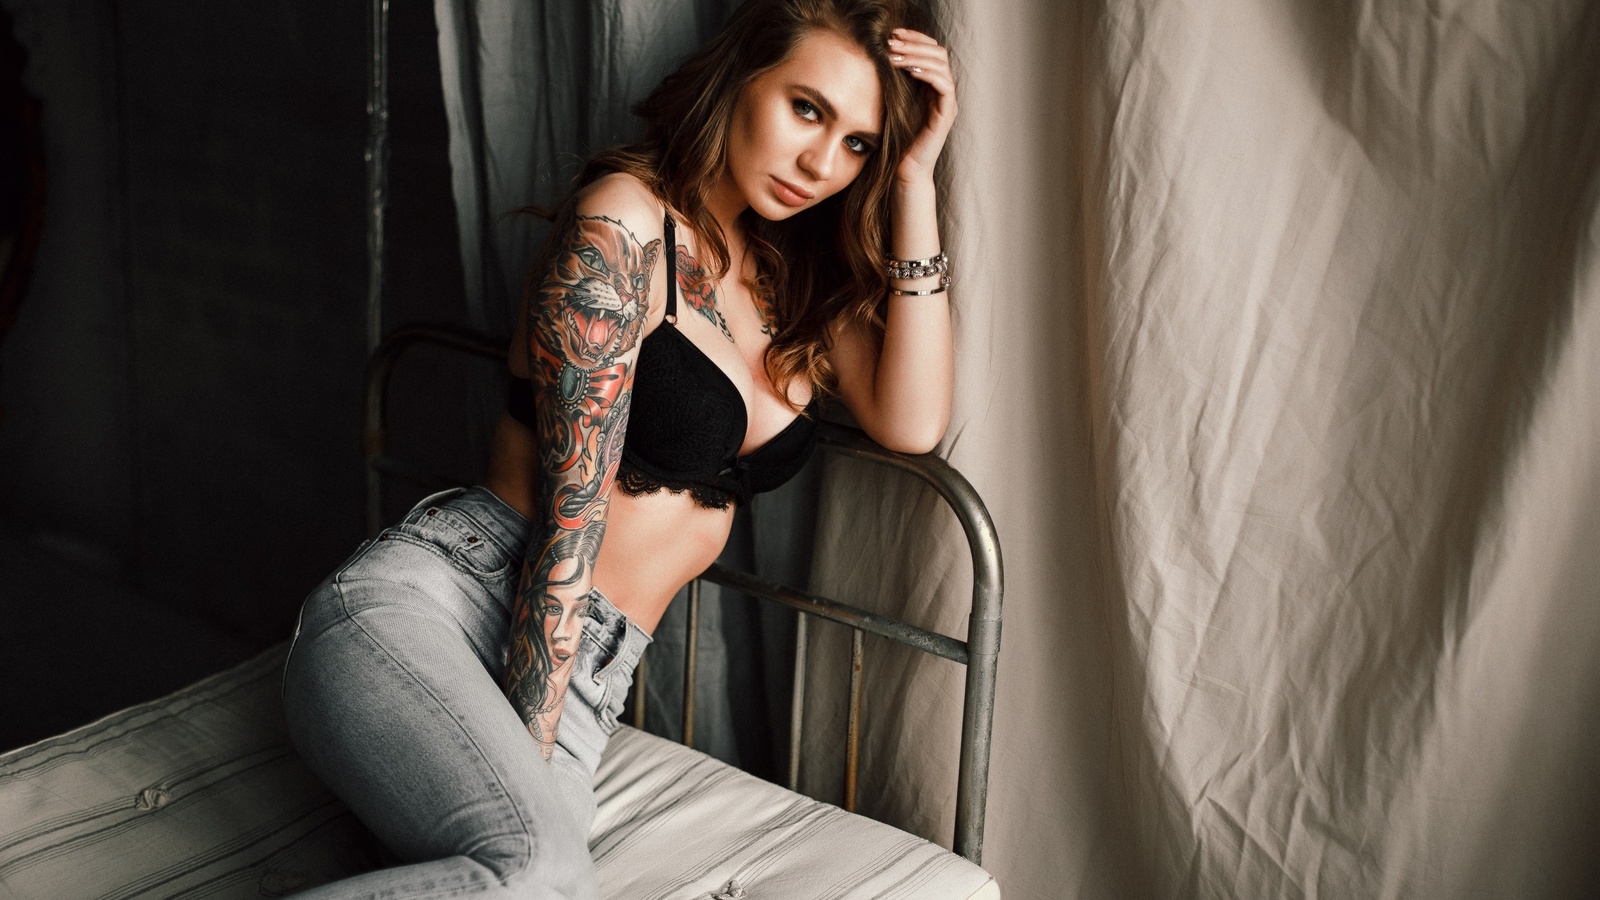 women, jeans, in bed, black bras, sitting, brunette, tattoo, portrait